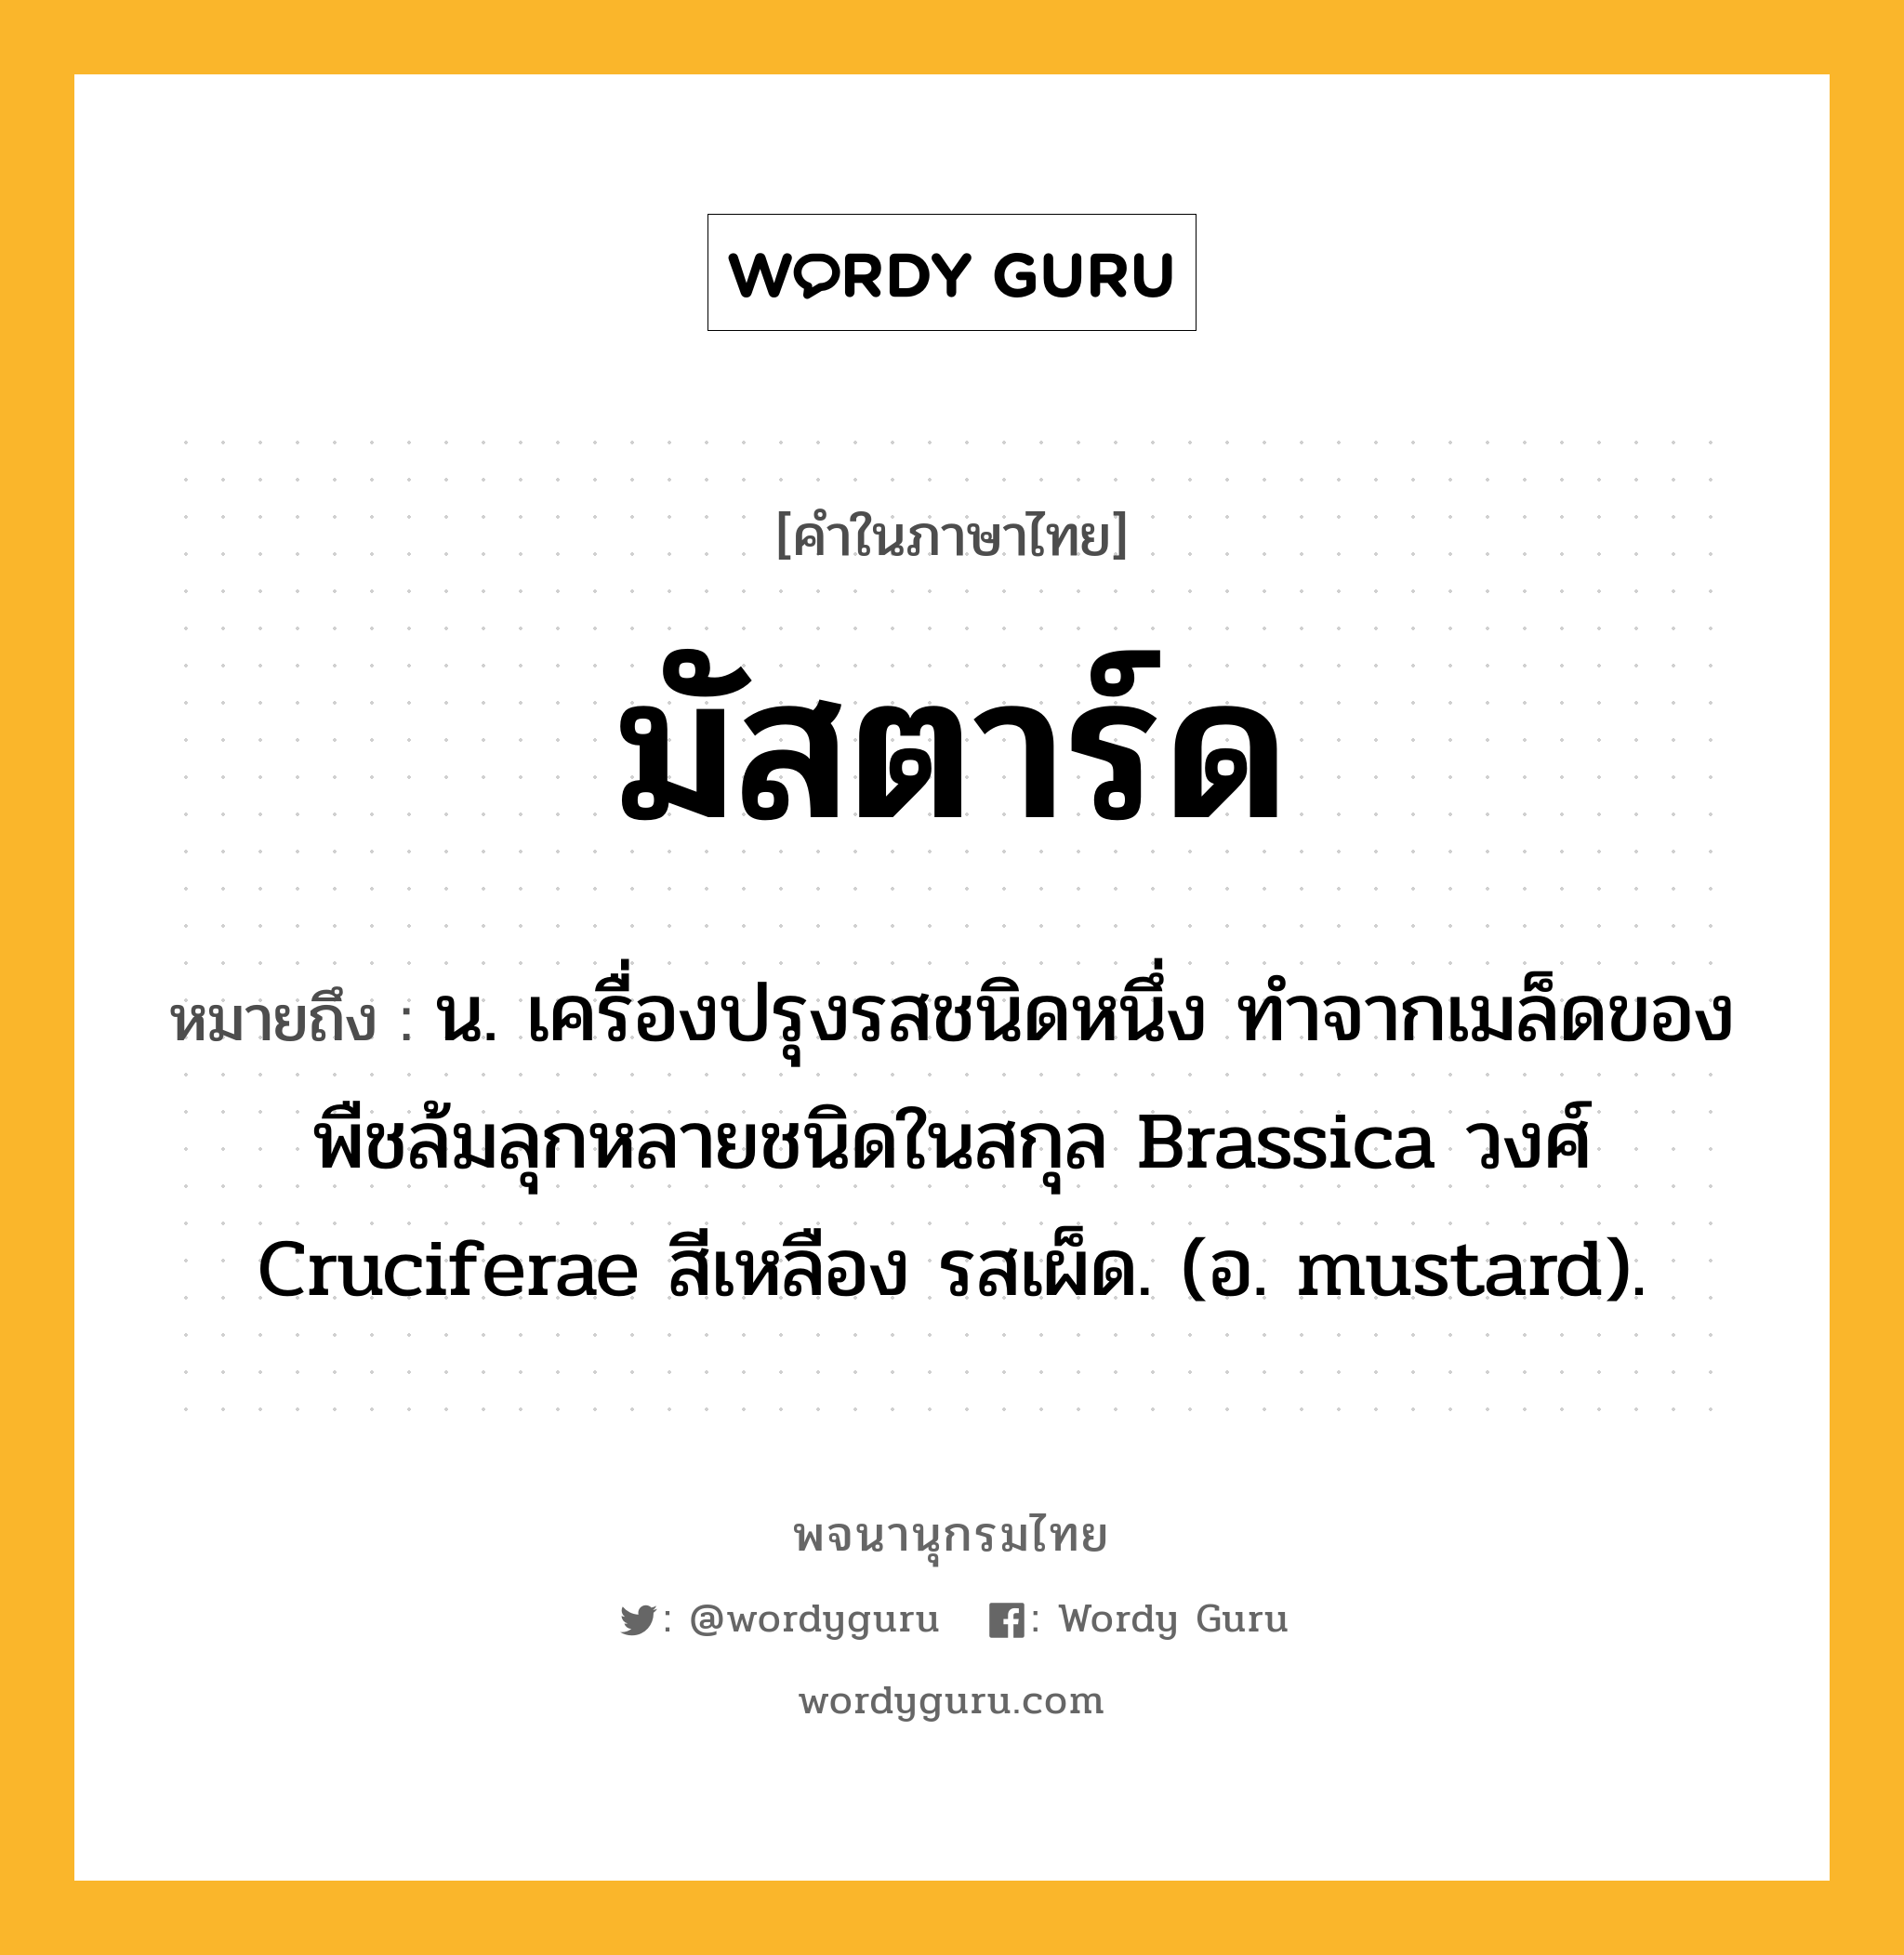 มัสตาร์ด ความหมาย หมายถึงอะไร?, คำในภาษาไทย มัสตาร์ด หมายถึง น. เครื่องปรุงรสชนิดหนึ่ง ทําจากเมล็ดของพืชล้มลุกหลายชนิดในสกุล Brassica วงศ์ Cruciferae สีเหลือง รสเผ็ด. (อ. mustard).